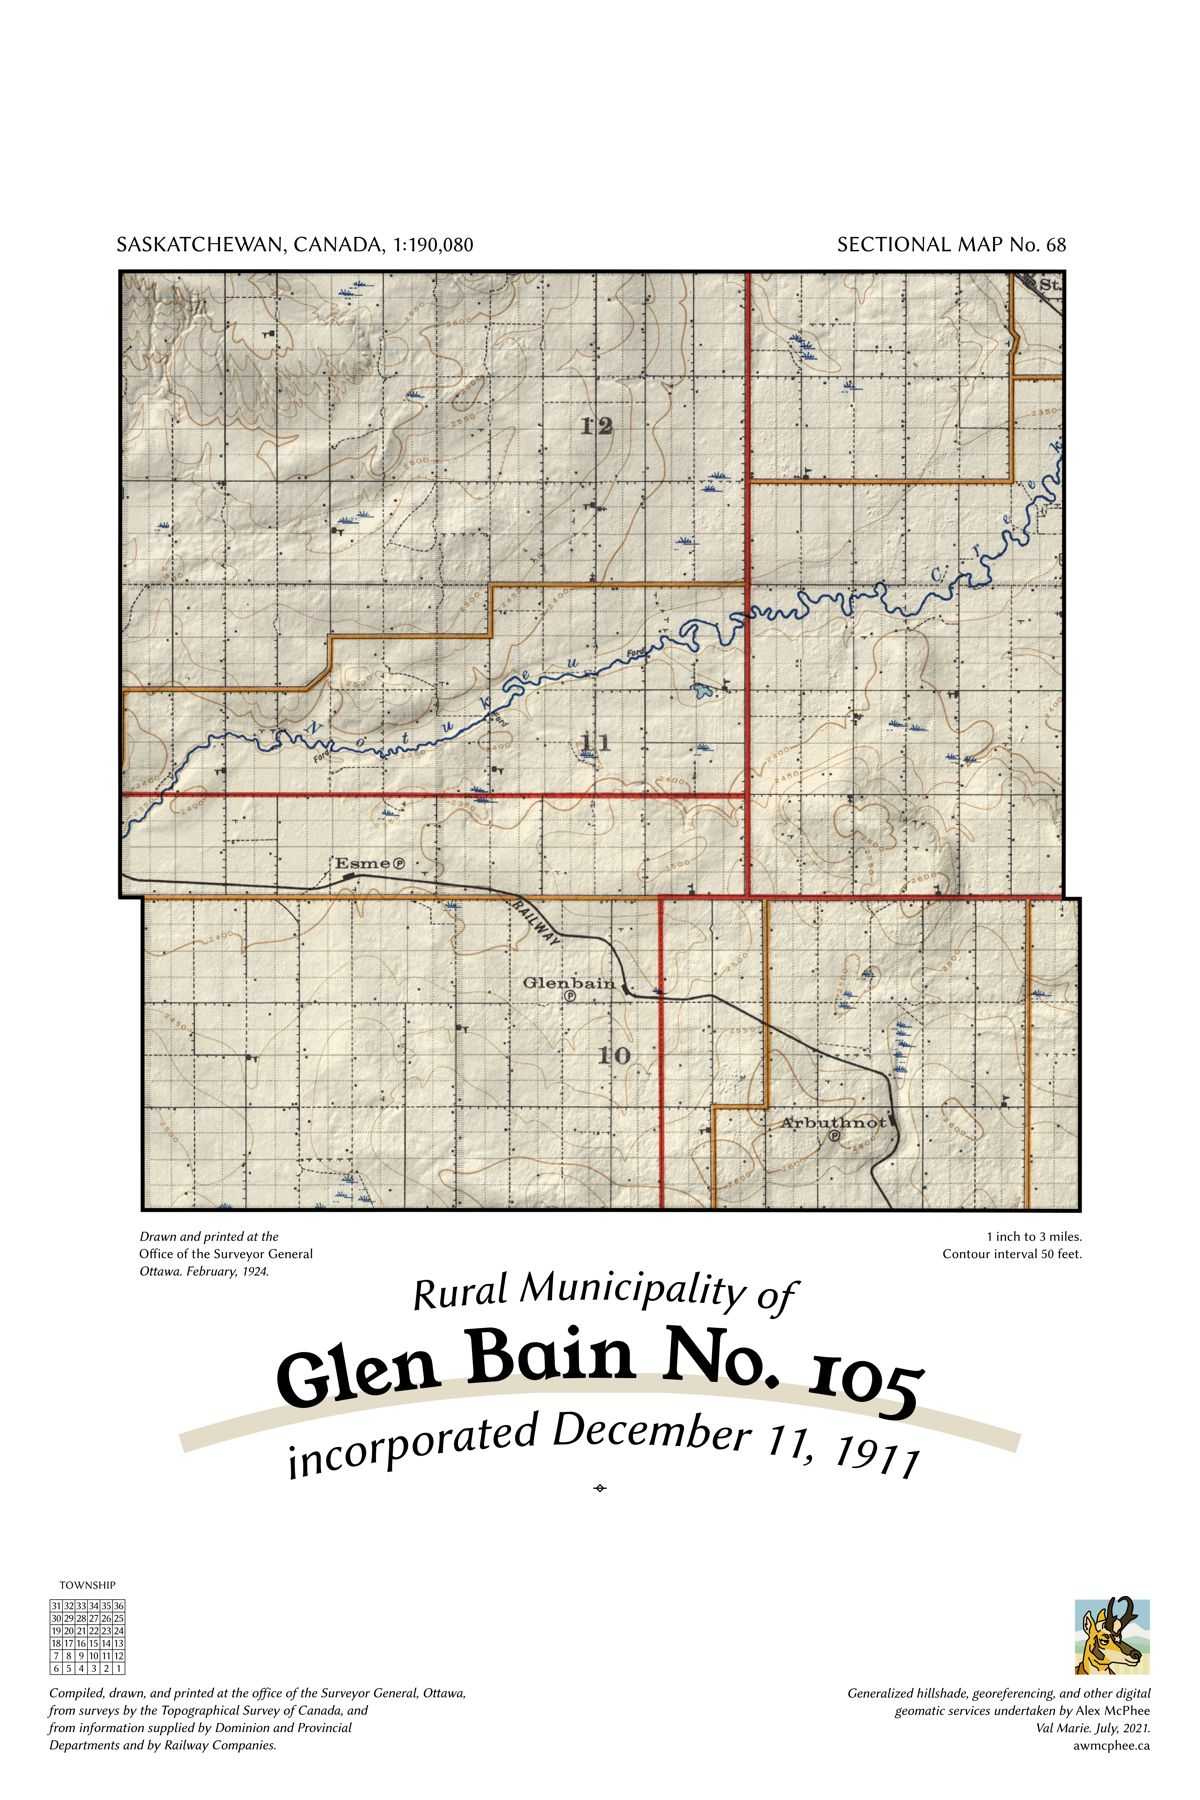 A map of the Rural Municipality of Glen Bain No. 105.